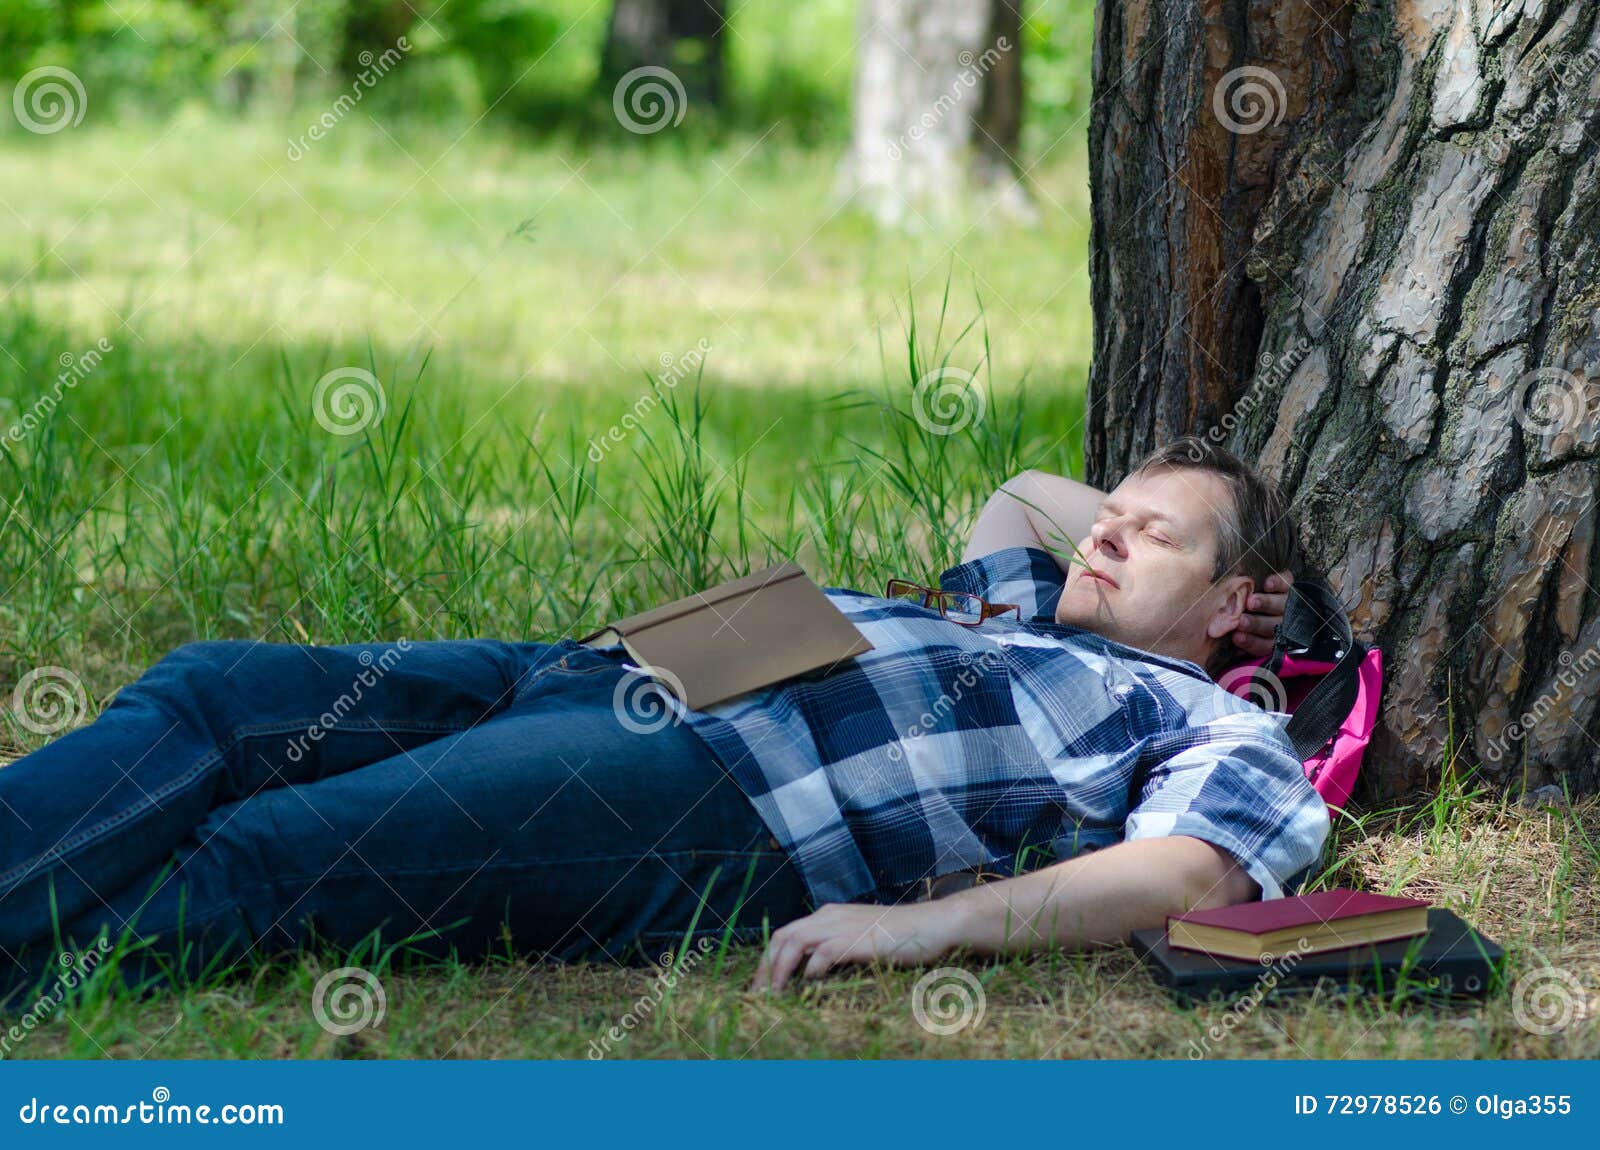 Нашли в лесу спящего. Спящий человек в лесу. Спящий лес. Человек спящий под деревом.